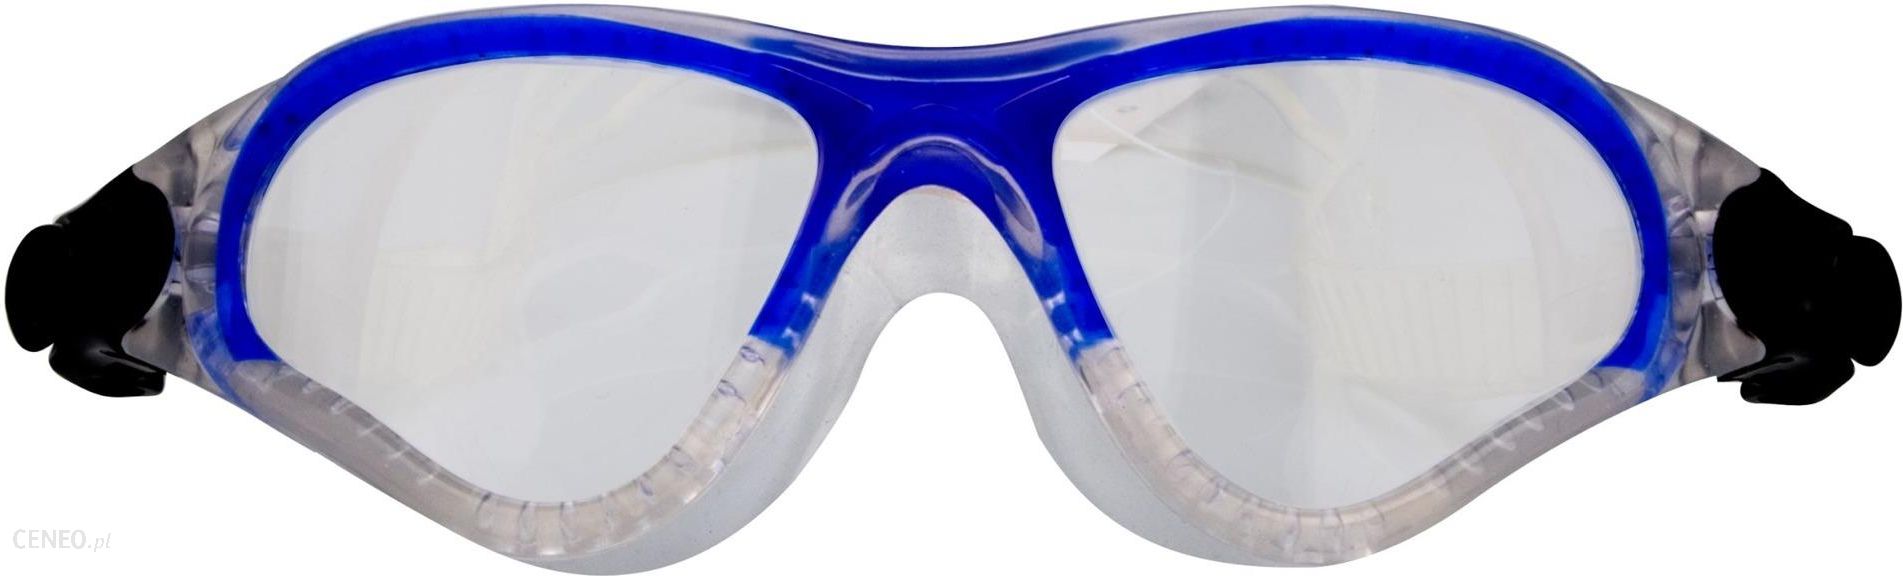 Waimea Okulary Do Pływania Dla Dzieci Niebieski Przeźroczysty